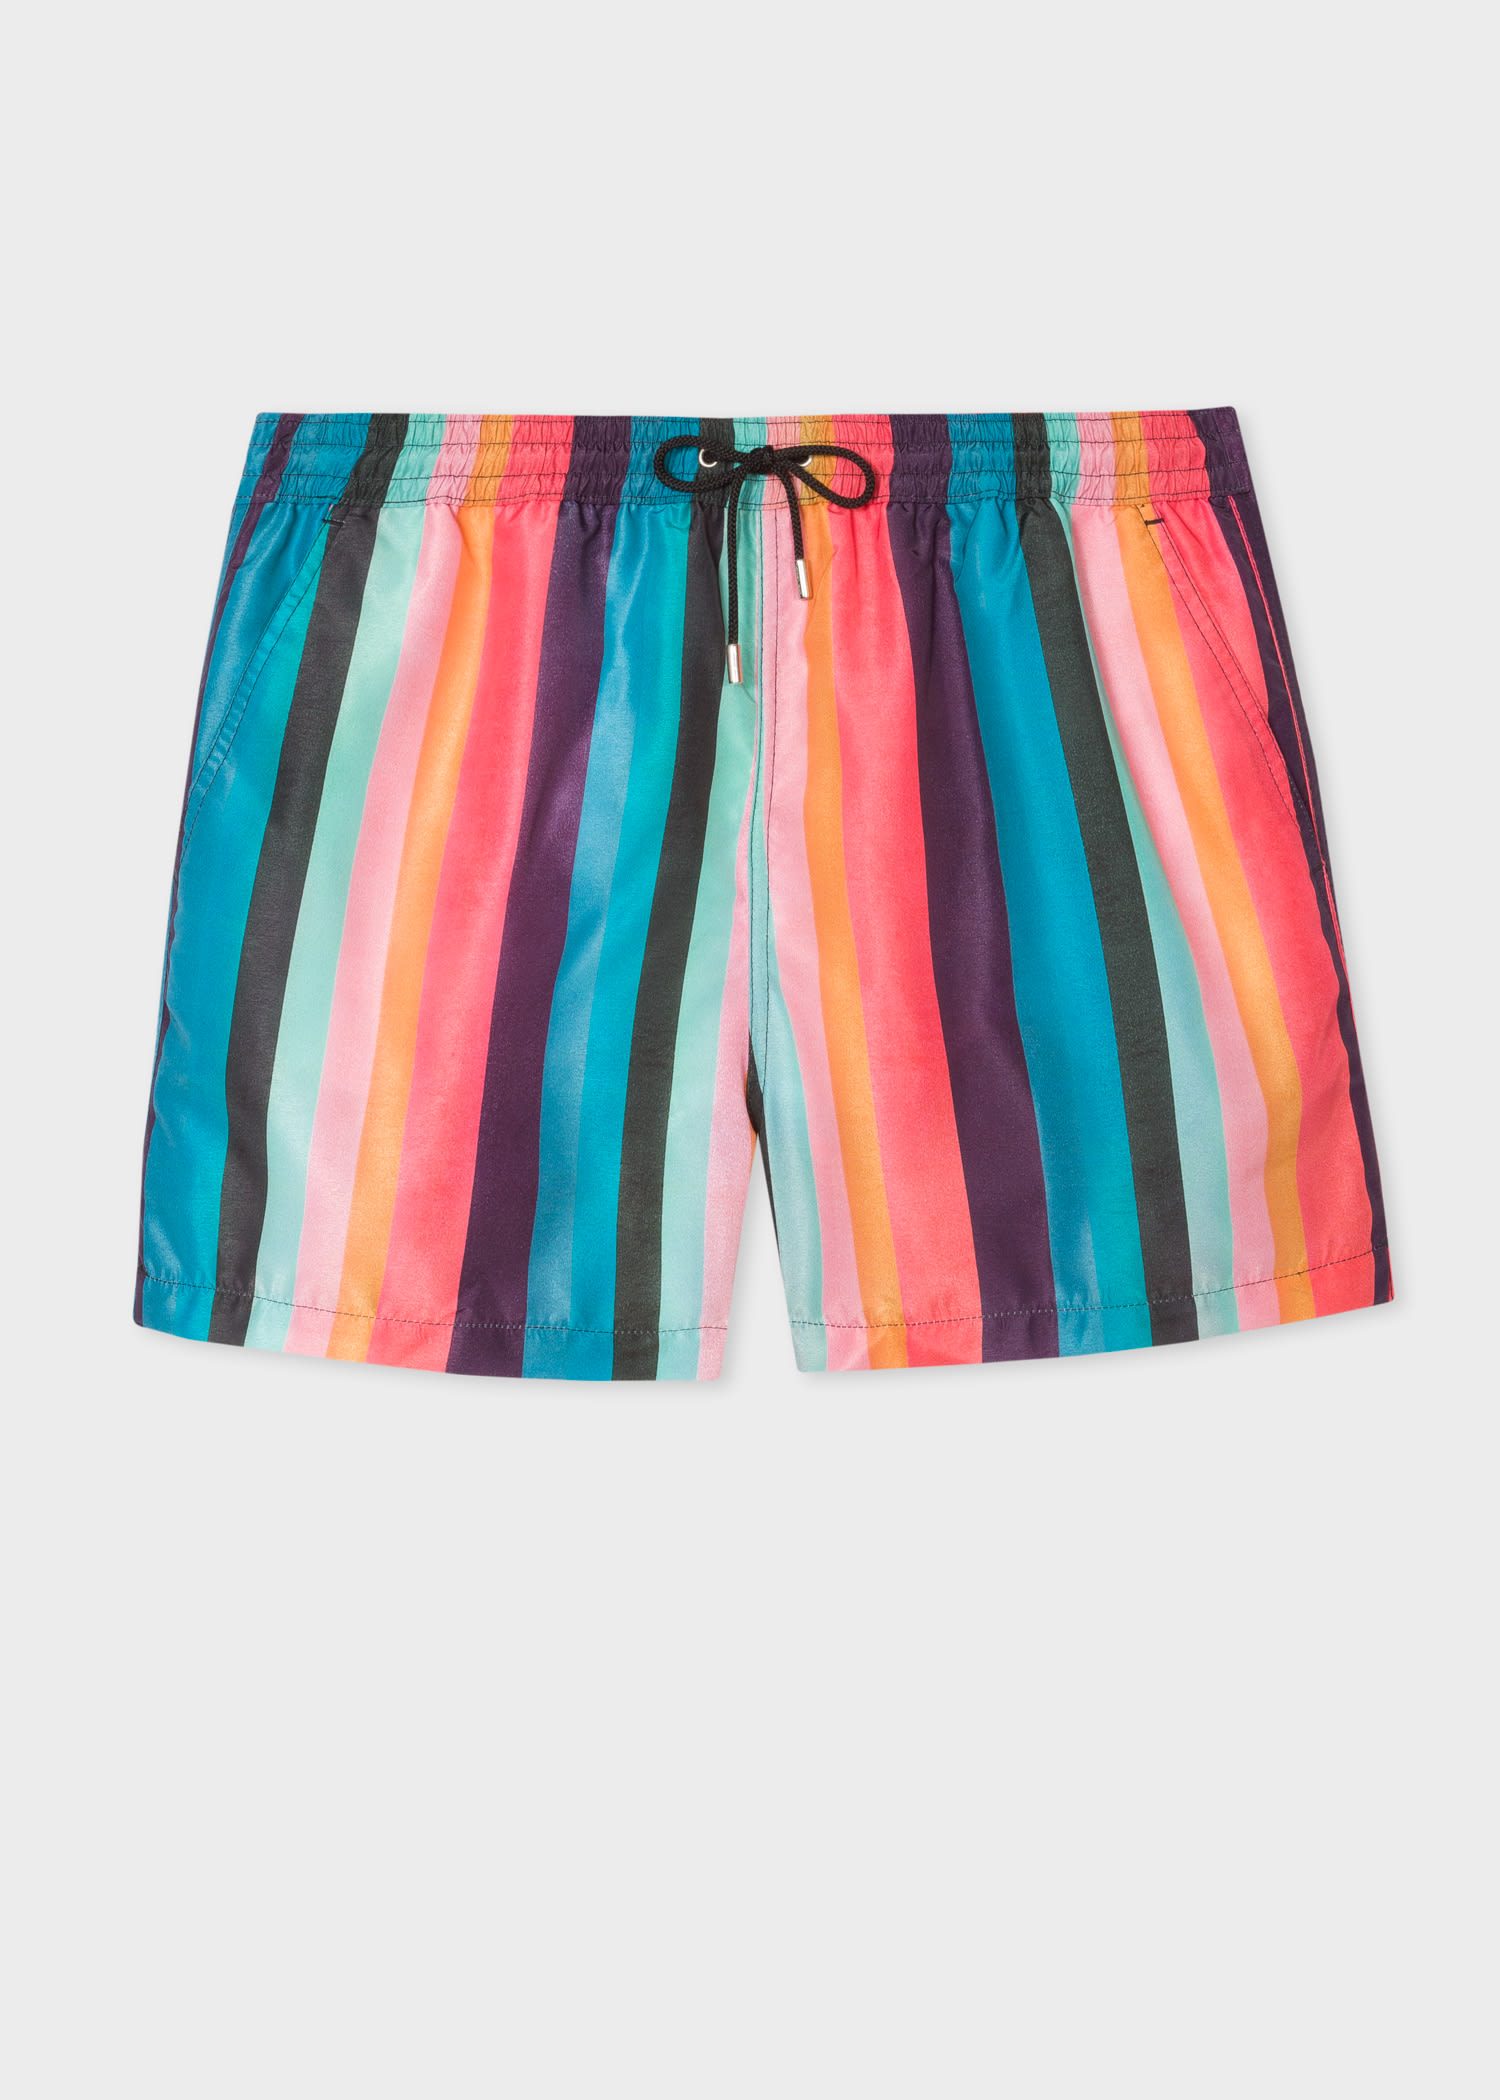 Men's Designer Swimwear | Swim Trunks & Shorts - Paul Smith US